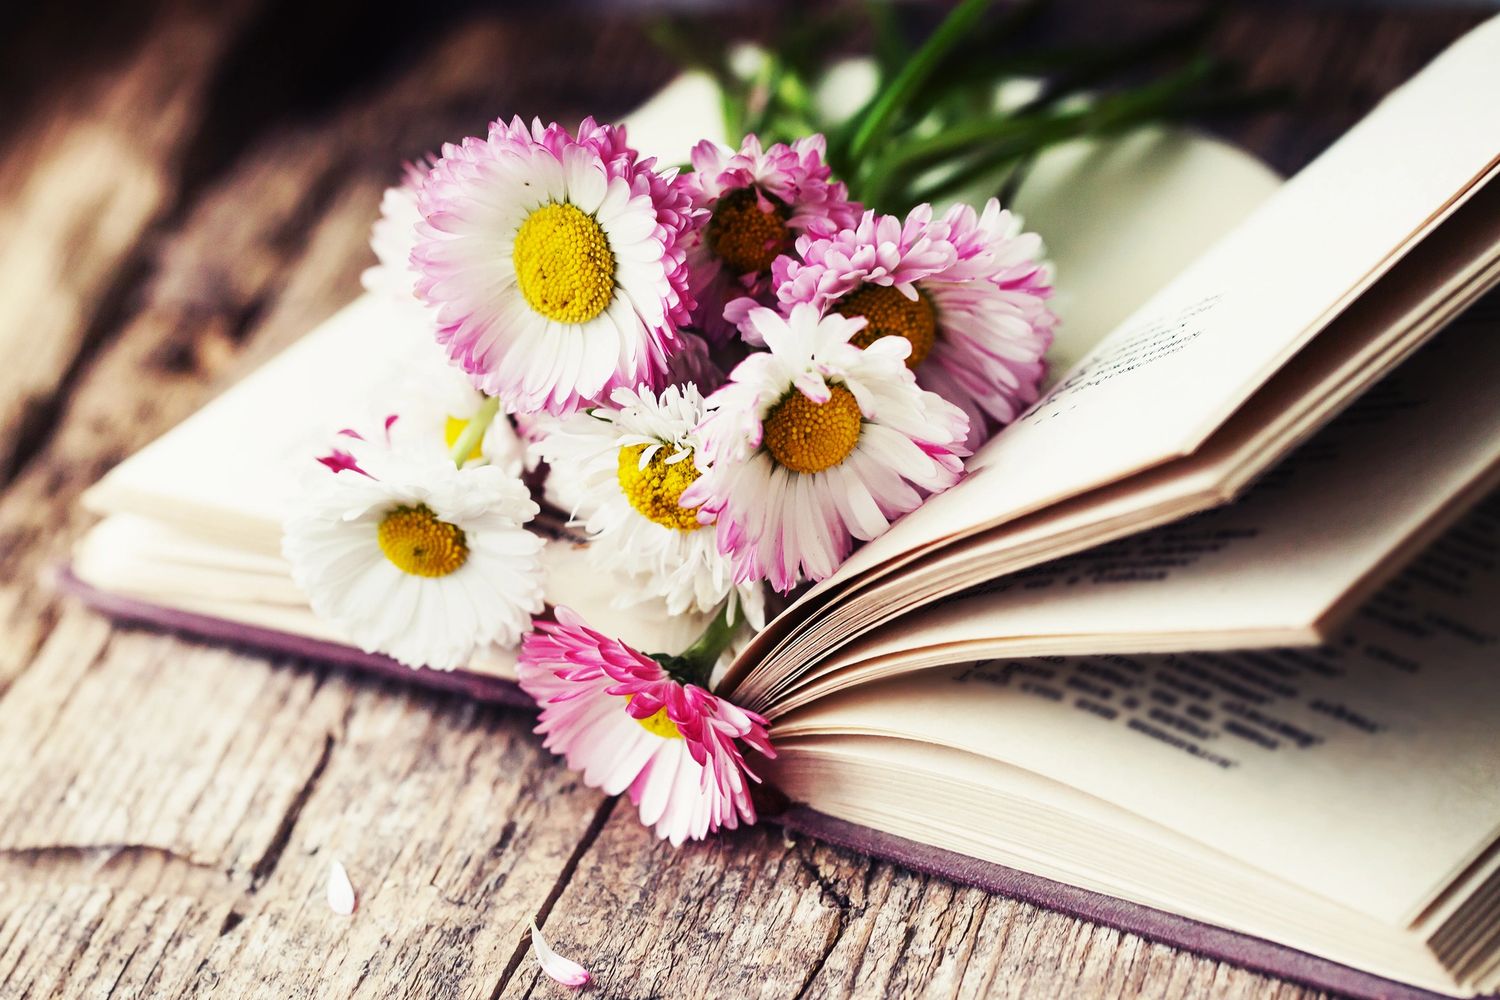 Flowering books